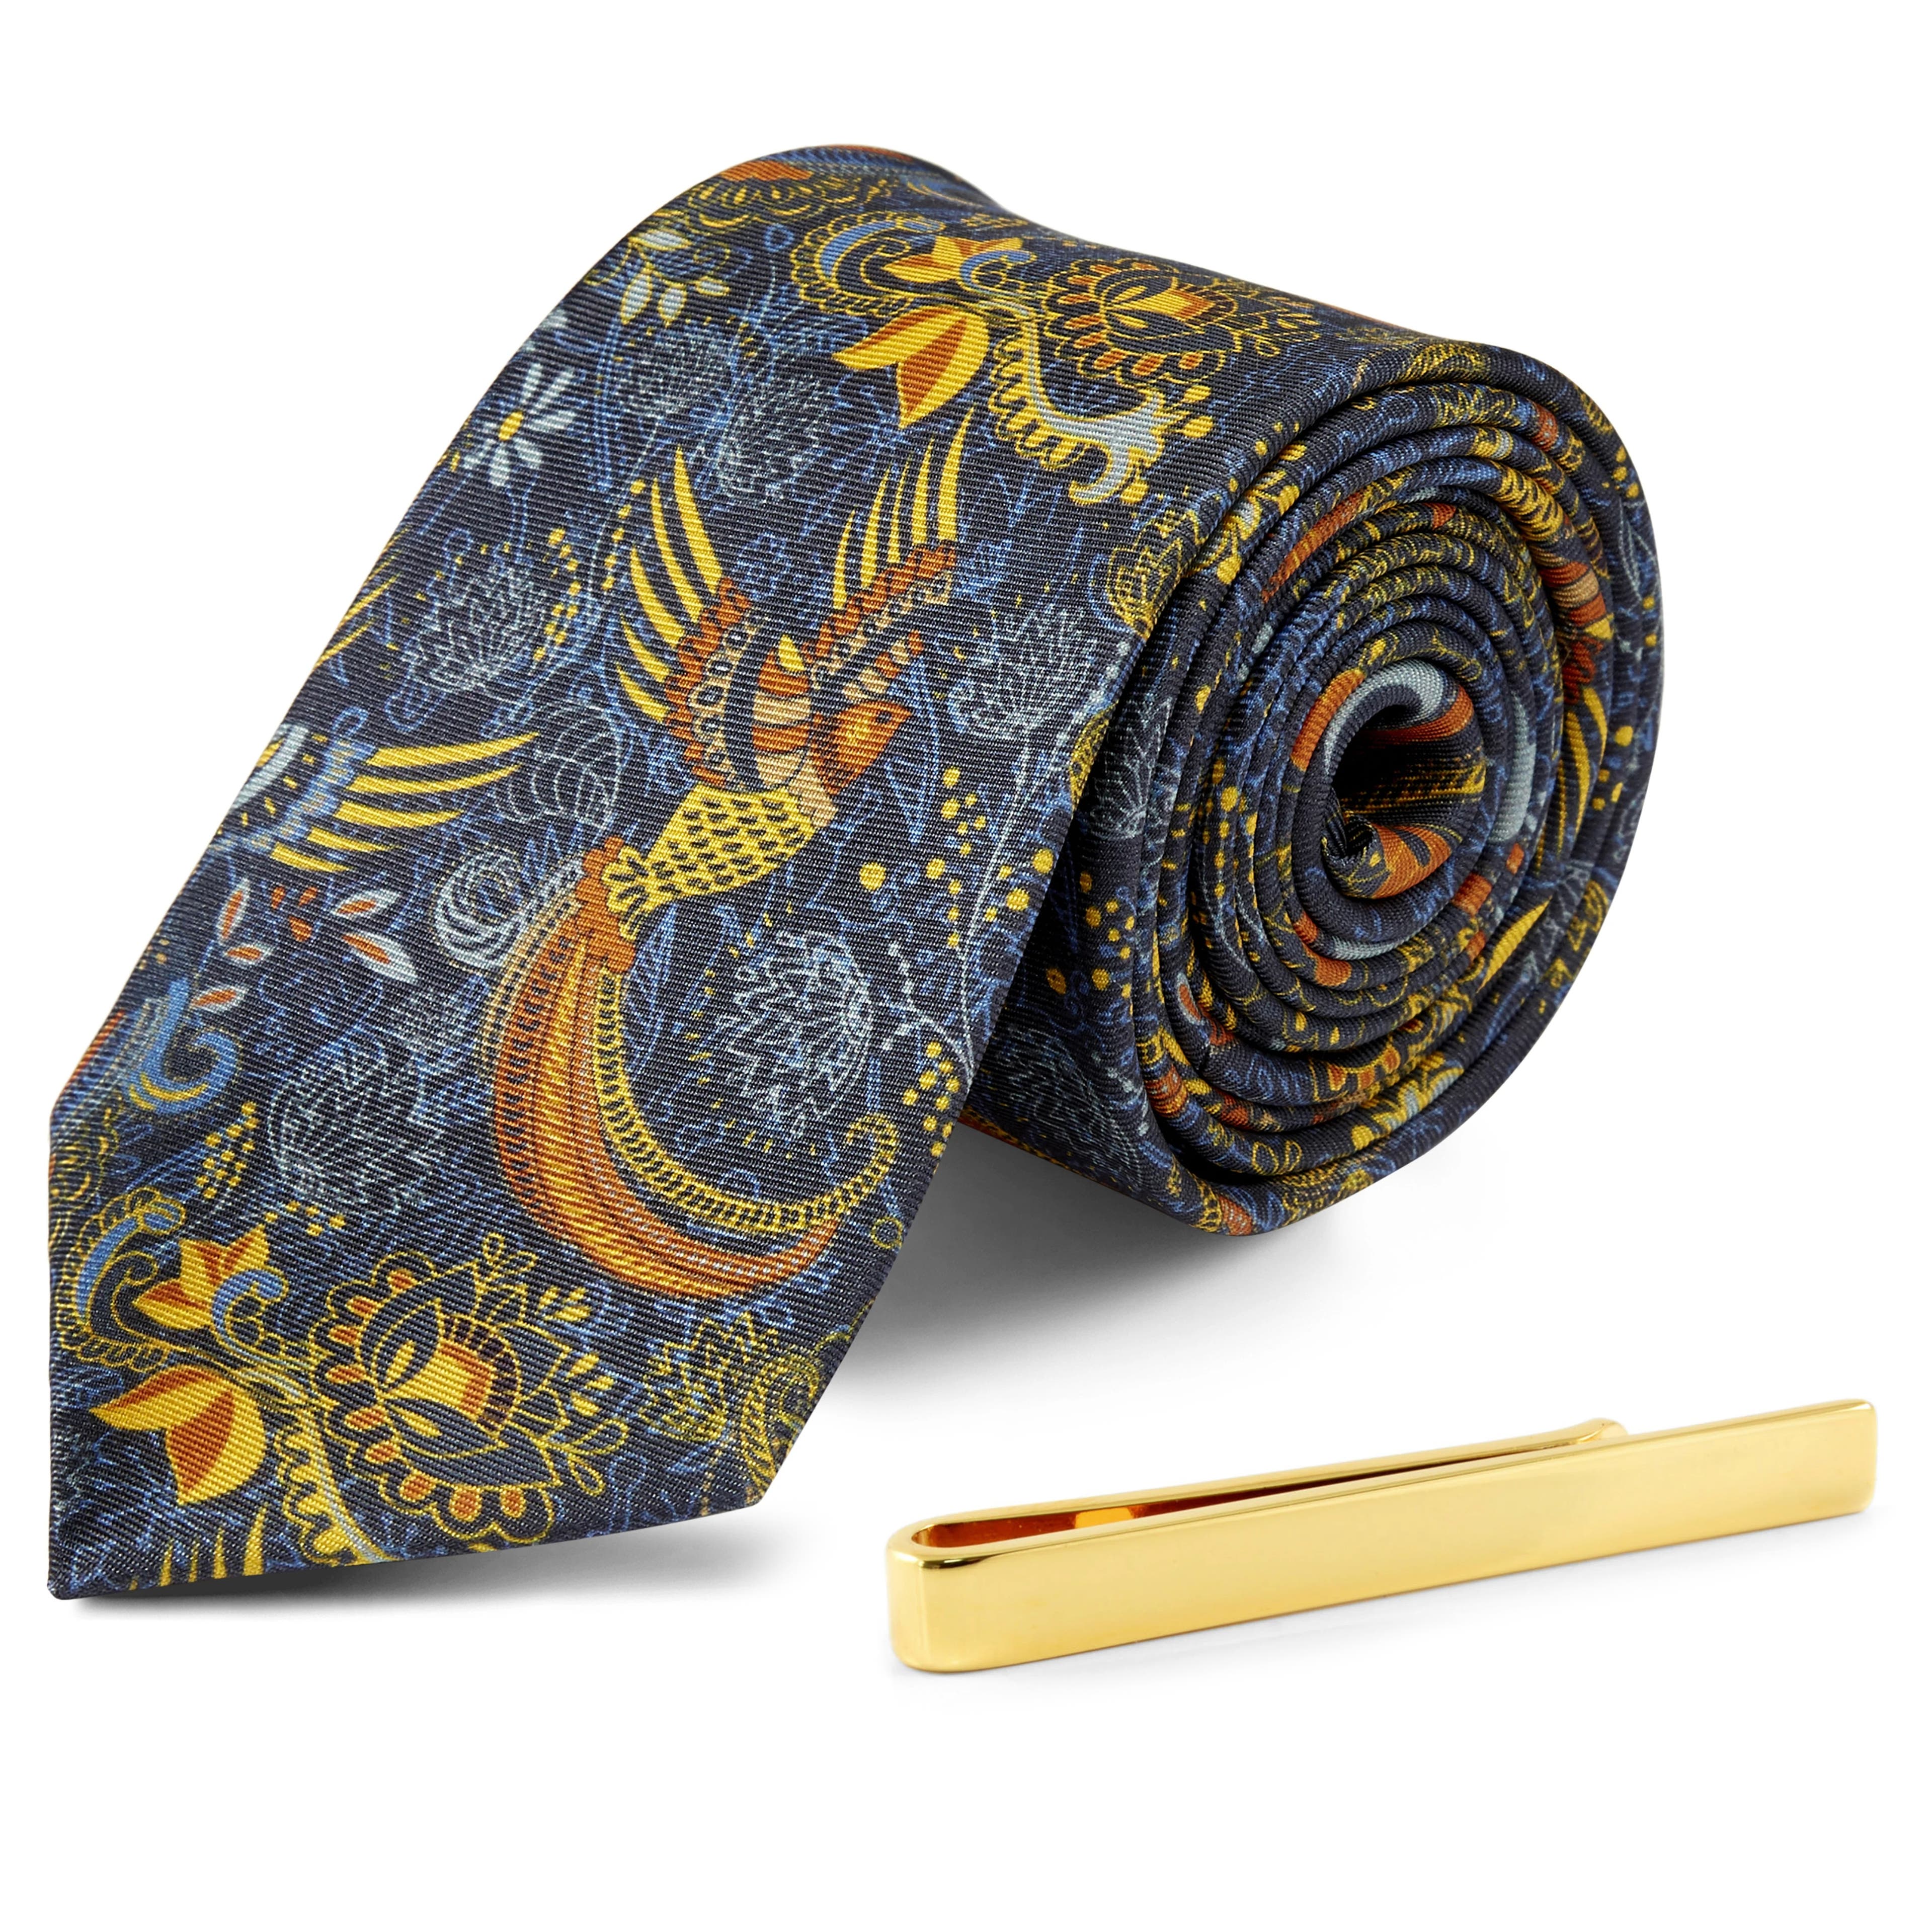 Bohém selyem nyakkendő és arany tónusú nyakkendőtű